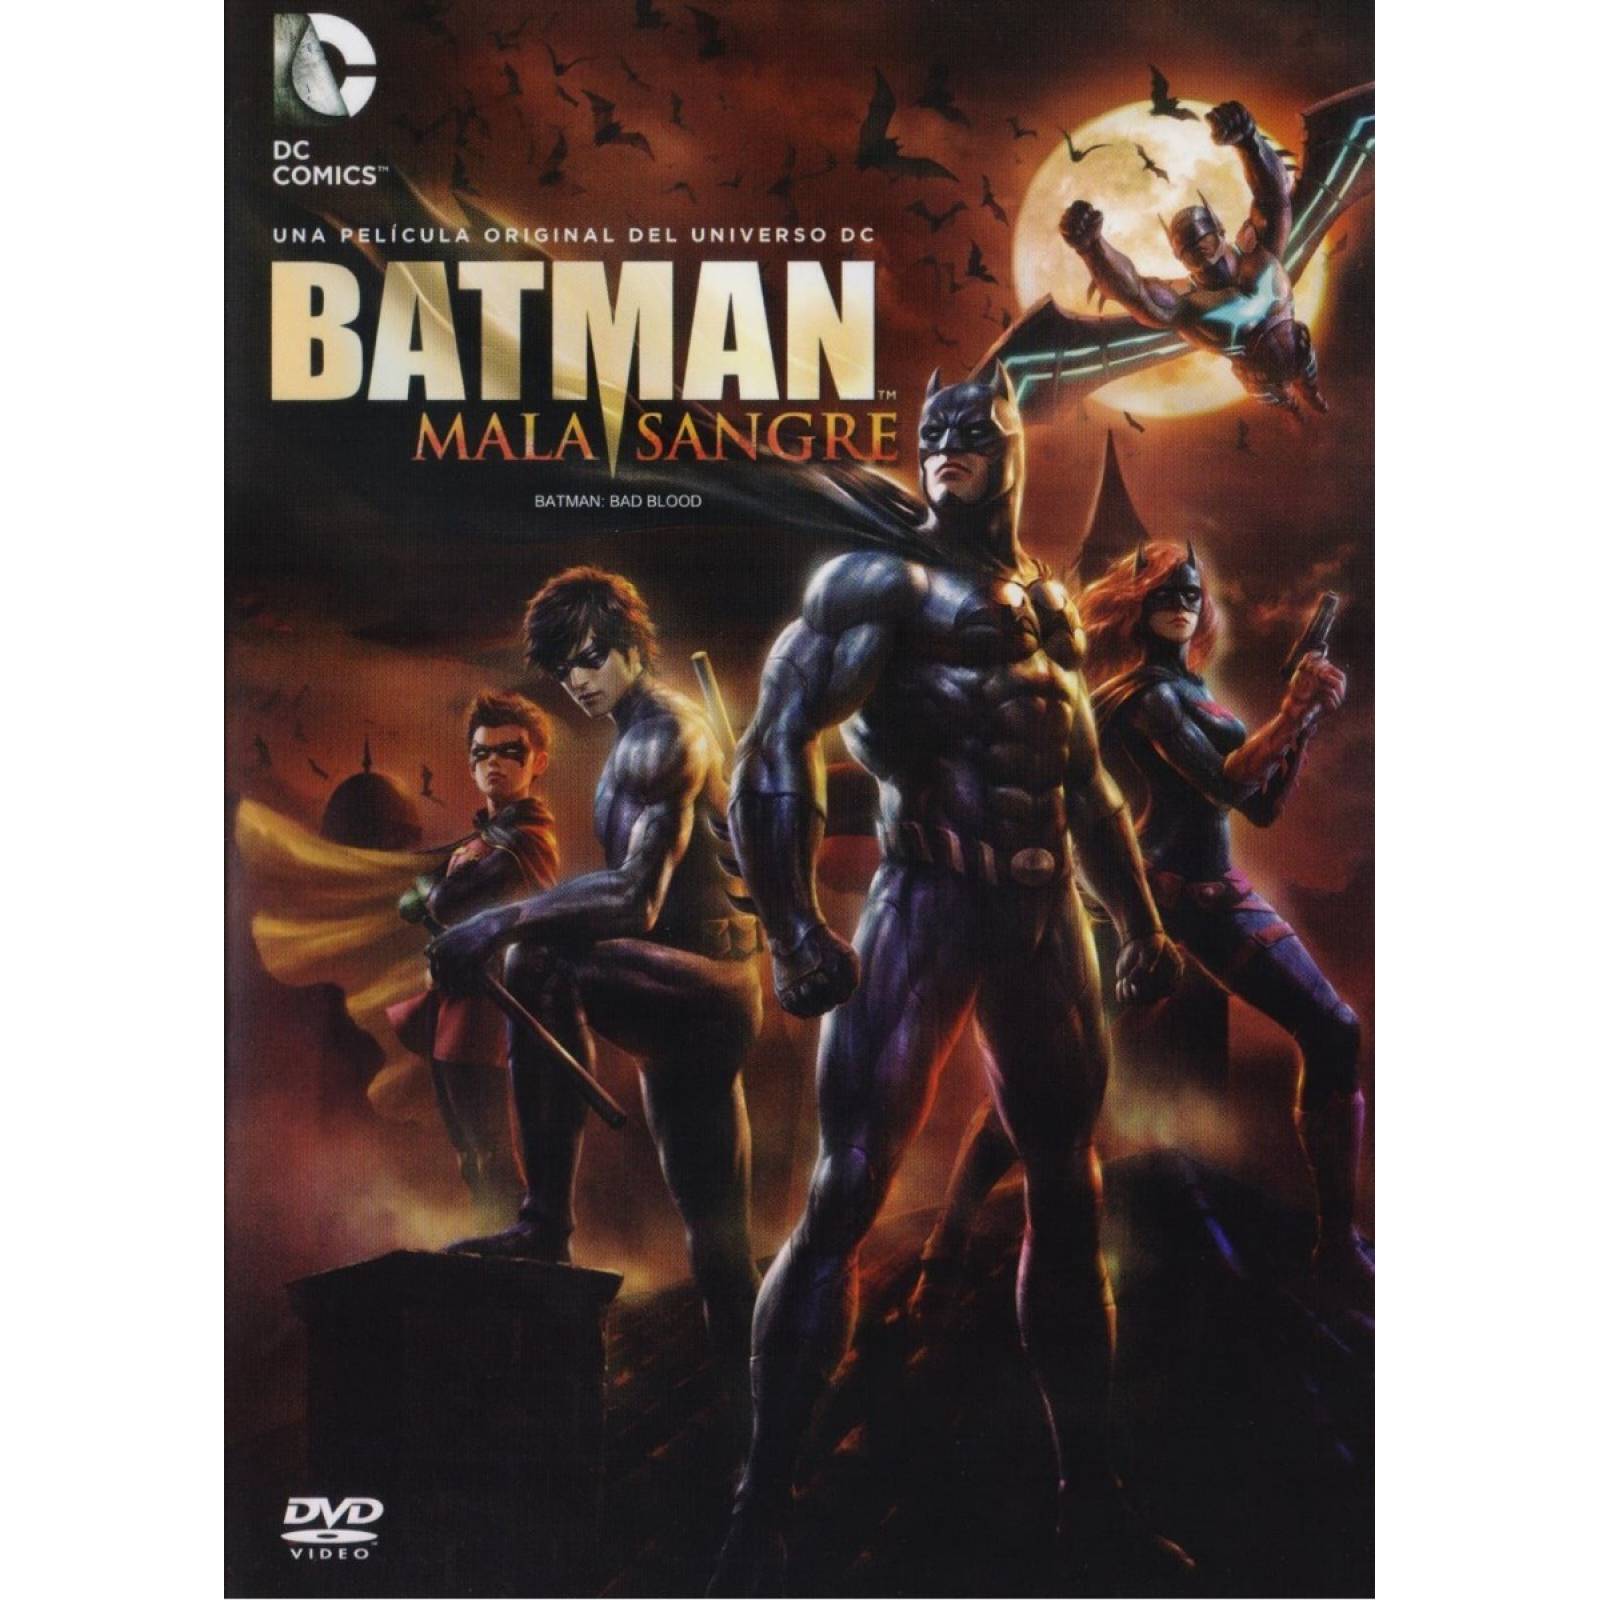 Batman Mala Sangre Bad Blood Dc Comics Pelicula Dvd